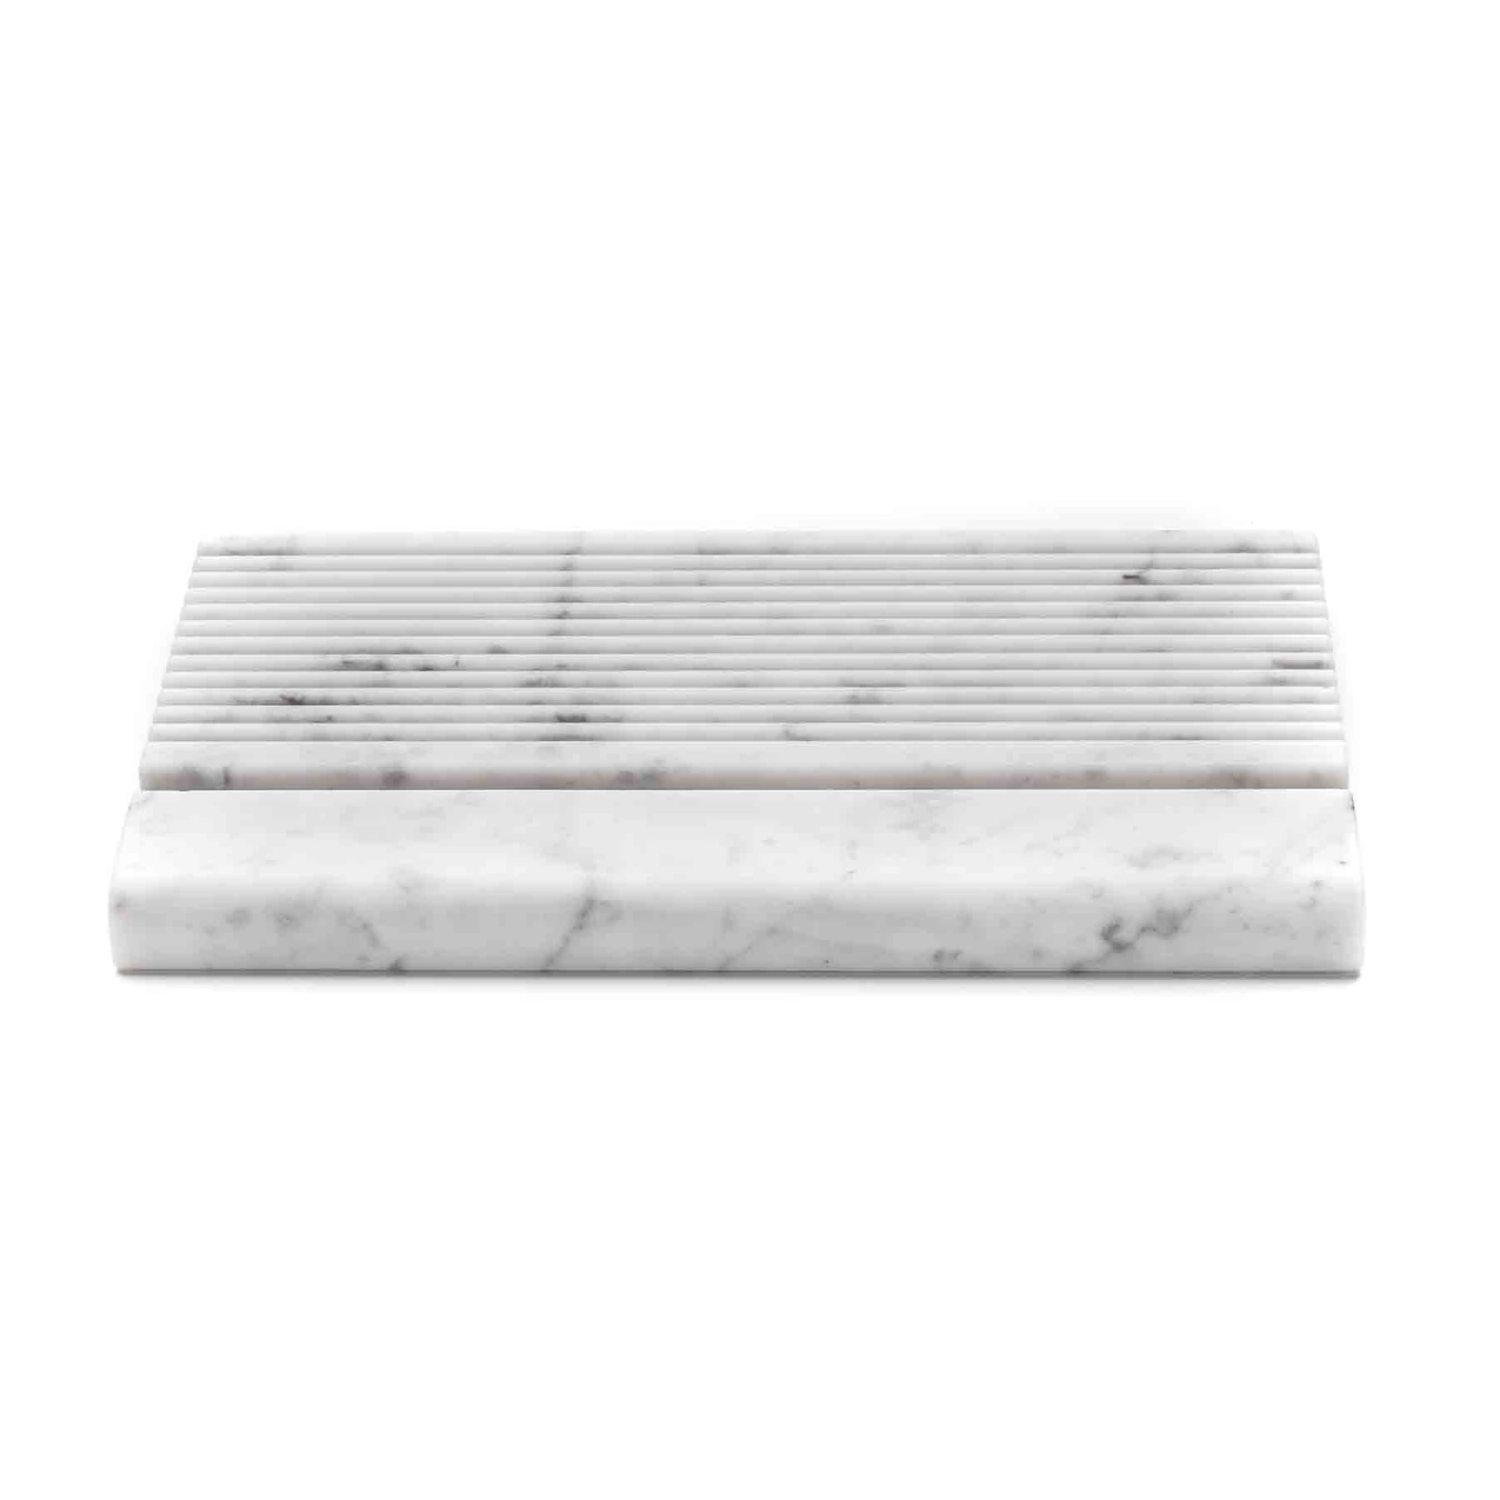 Marmolove Porta iPad® in marmo bianco di carrara - La notte spegnimi